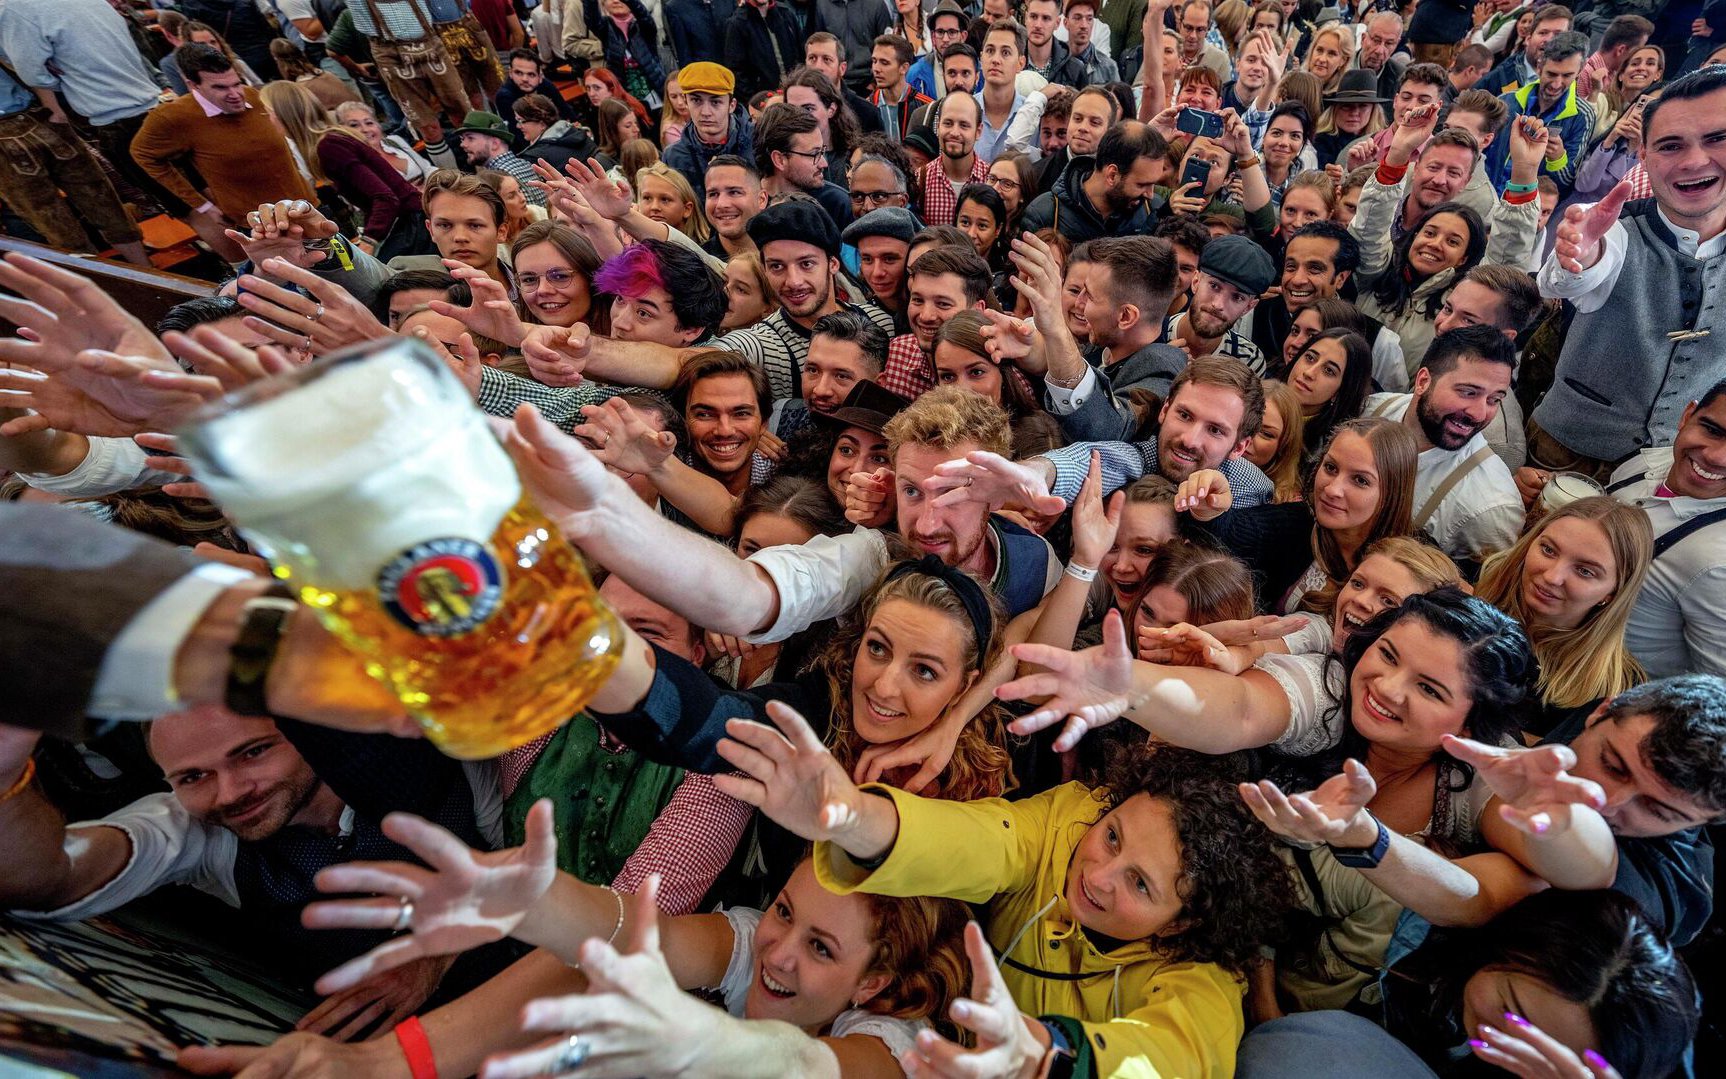 CĐV xếp hàng dài mua bia ở Qatar và cái kết "hết nấc"